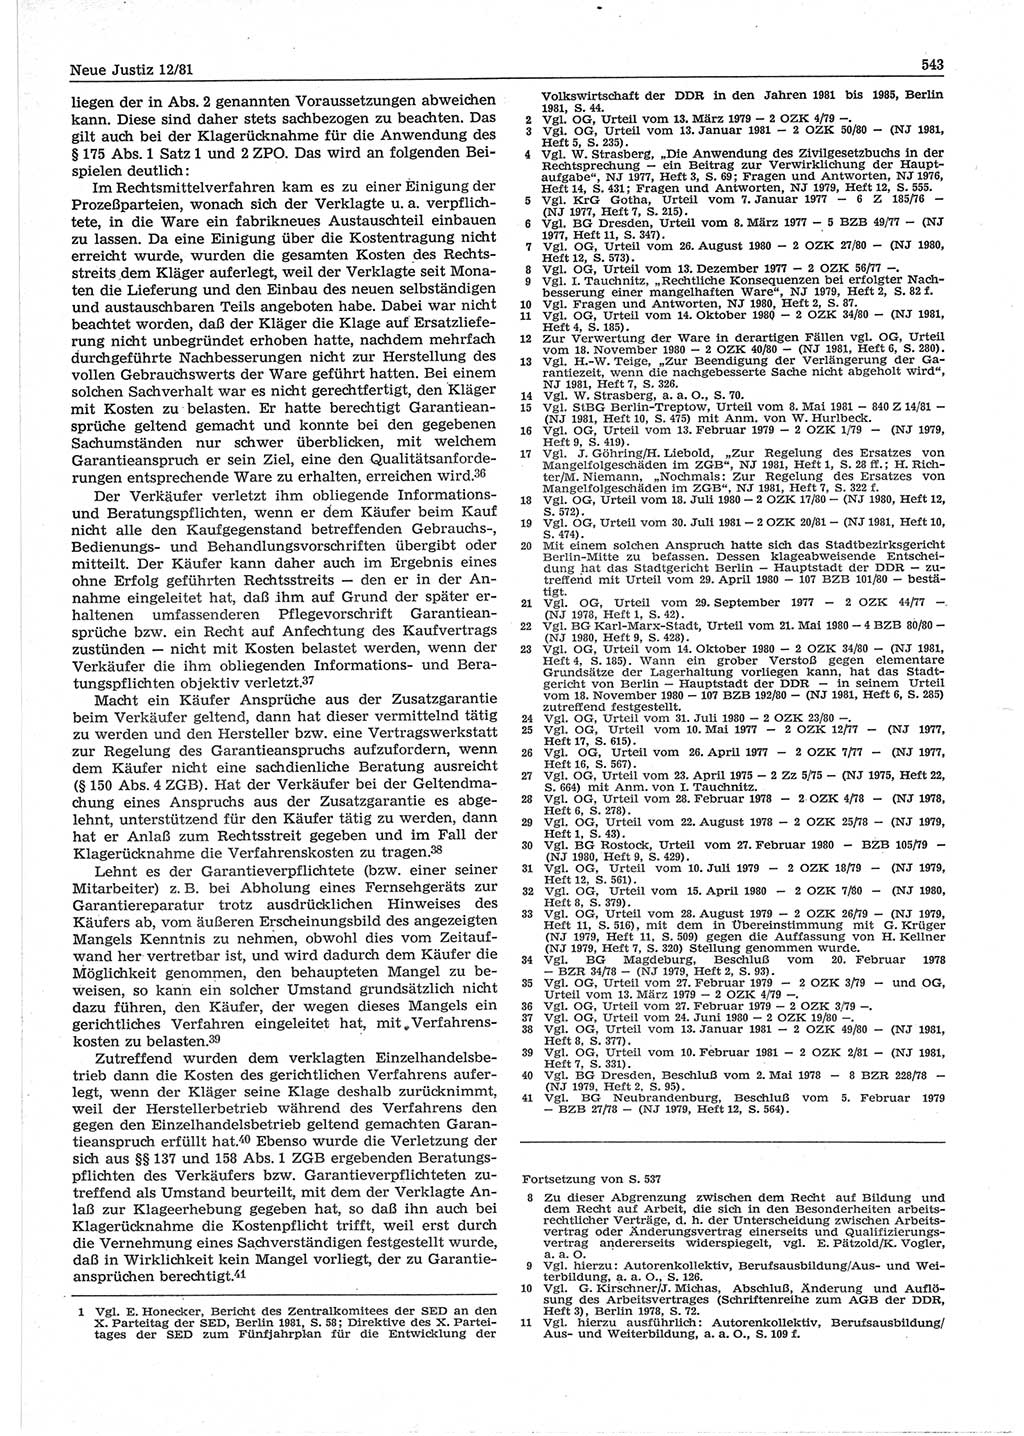 Neue Justiz (NJ), Zeitschrift für sozialistisches Recht und Gesetzlichkeit [Deutsche Demokratische Republik (DDR)], 35. Jahrgang 1981, Seite 543 (NJ DDR 1981, S. 543)